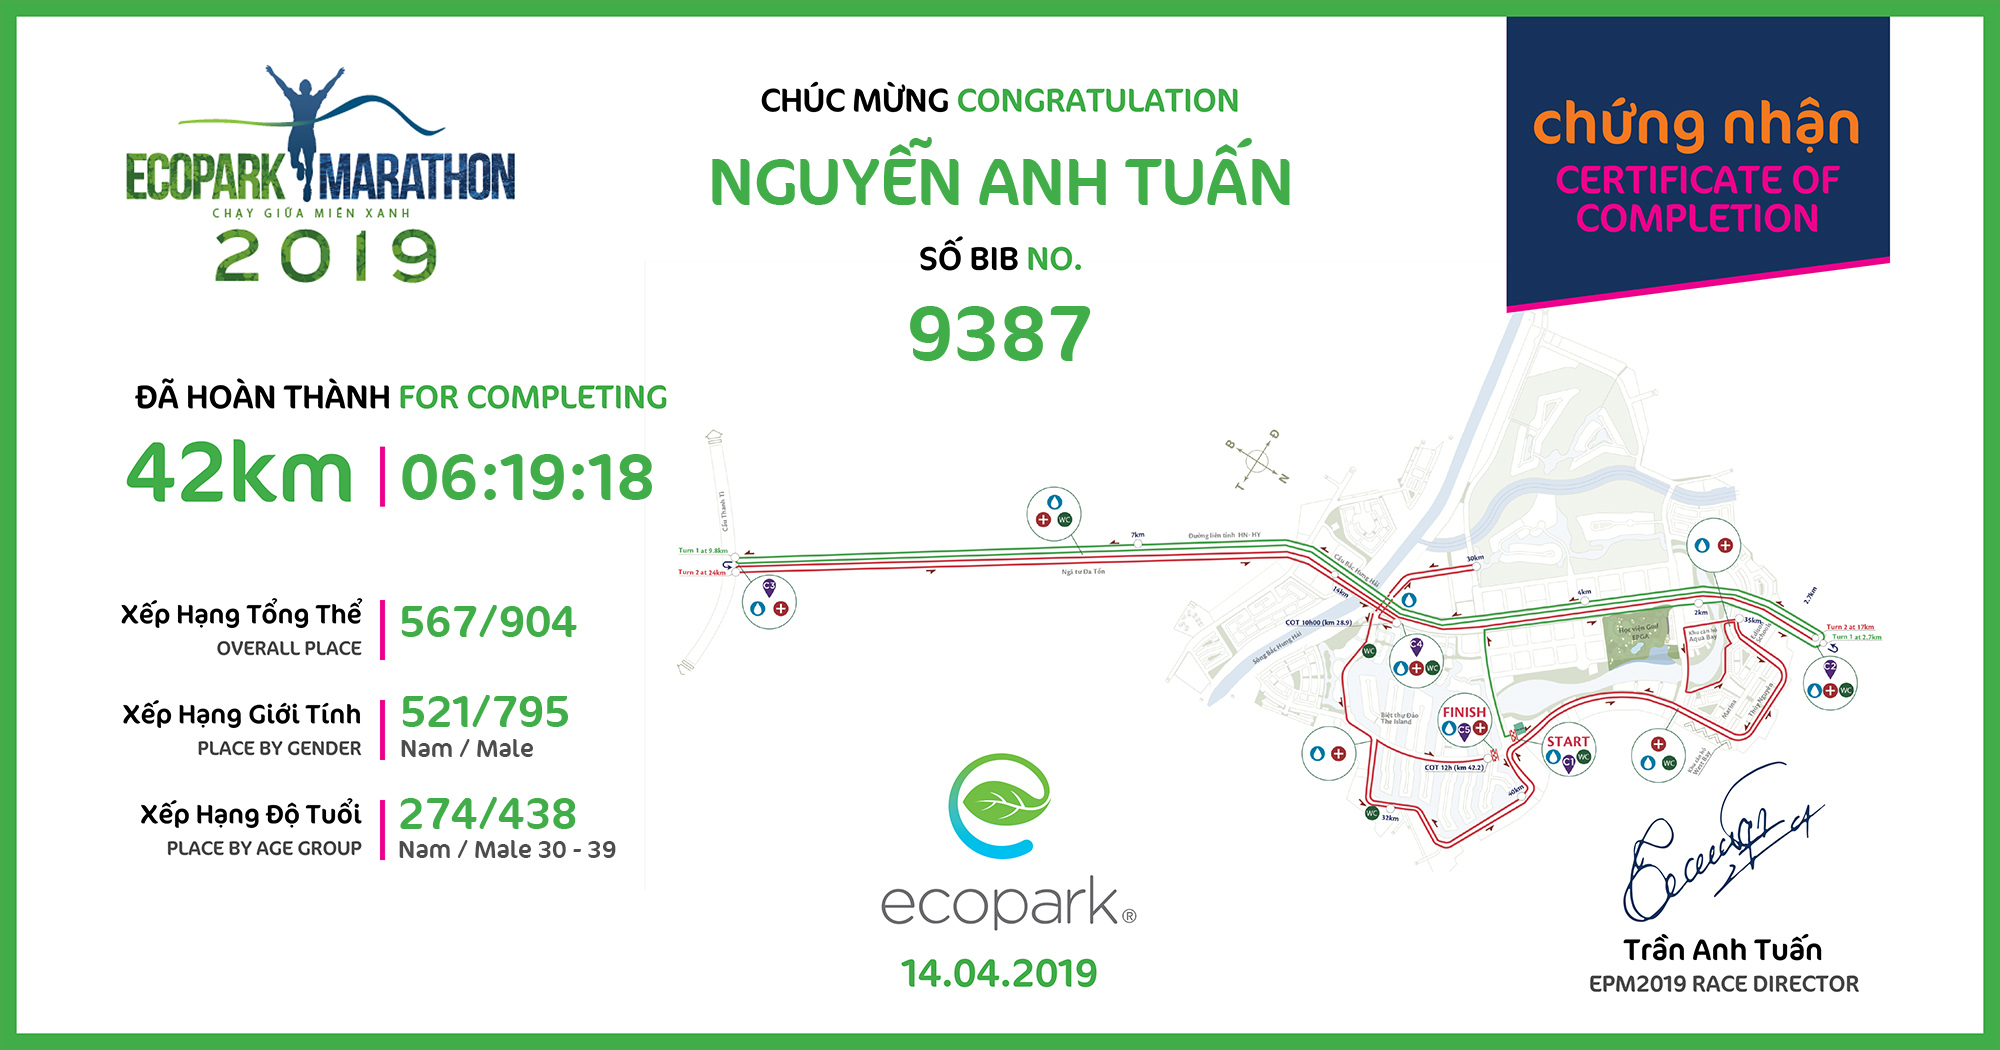 9387 - Nguyễn Anh Tuấn